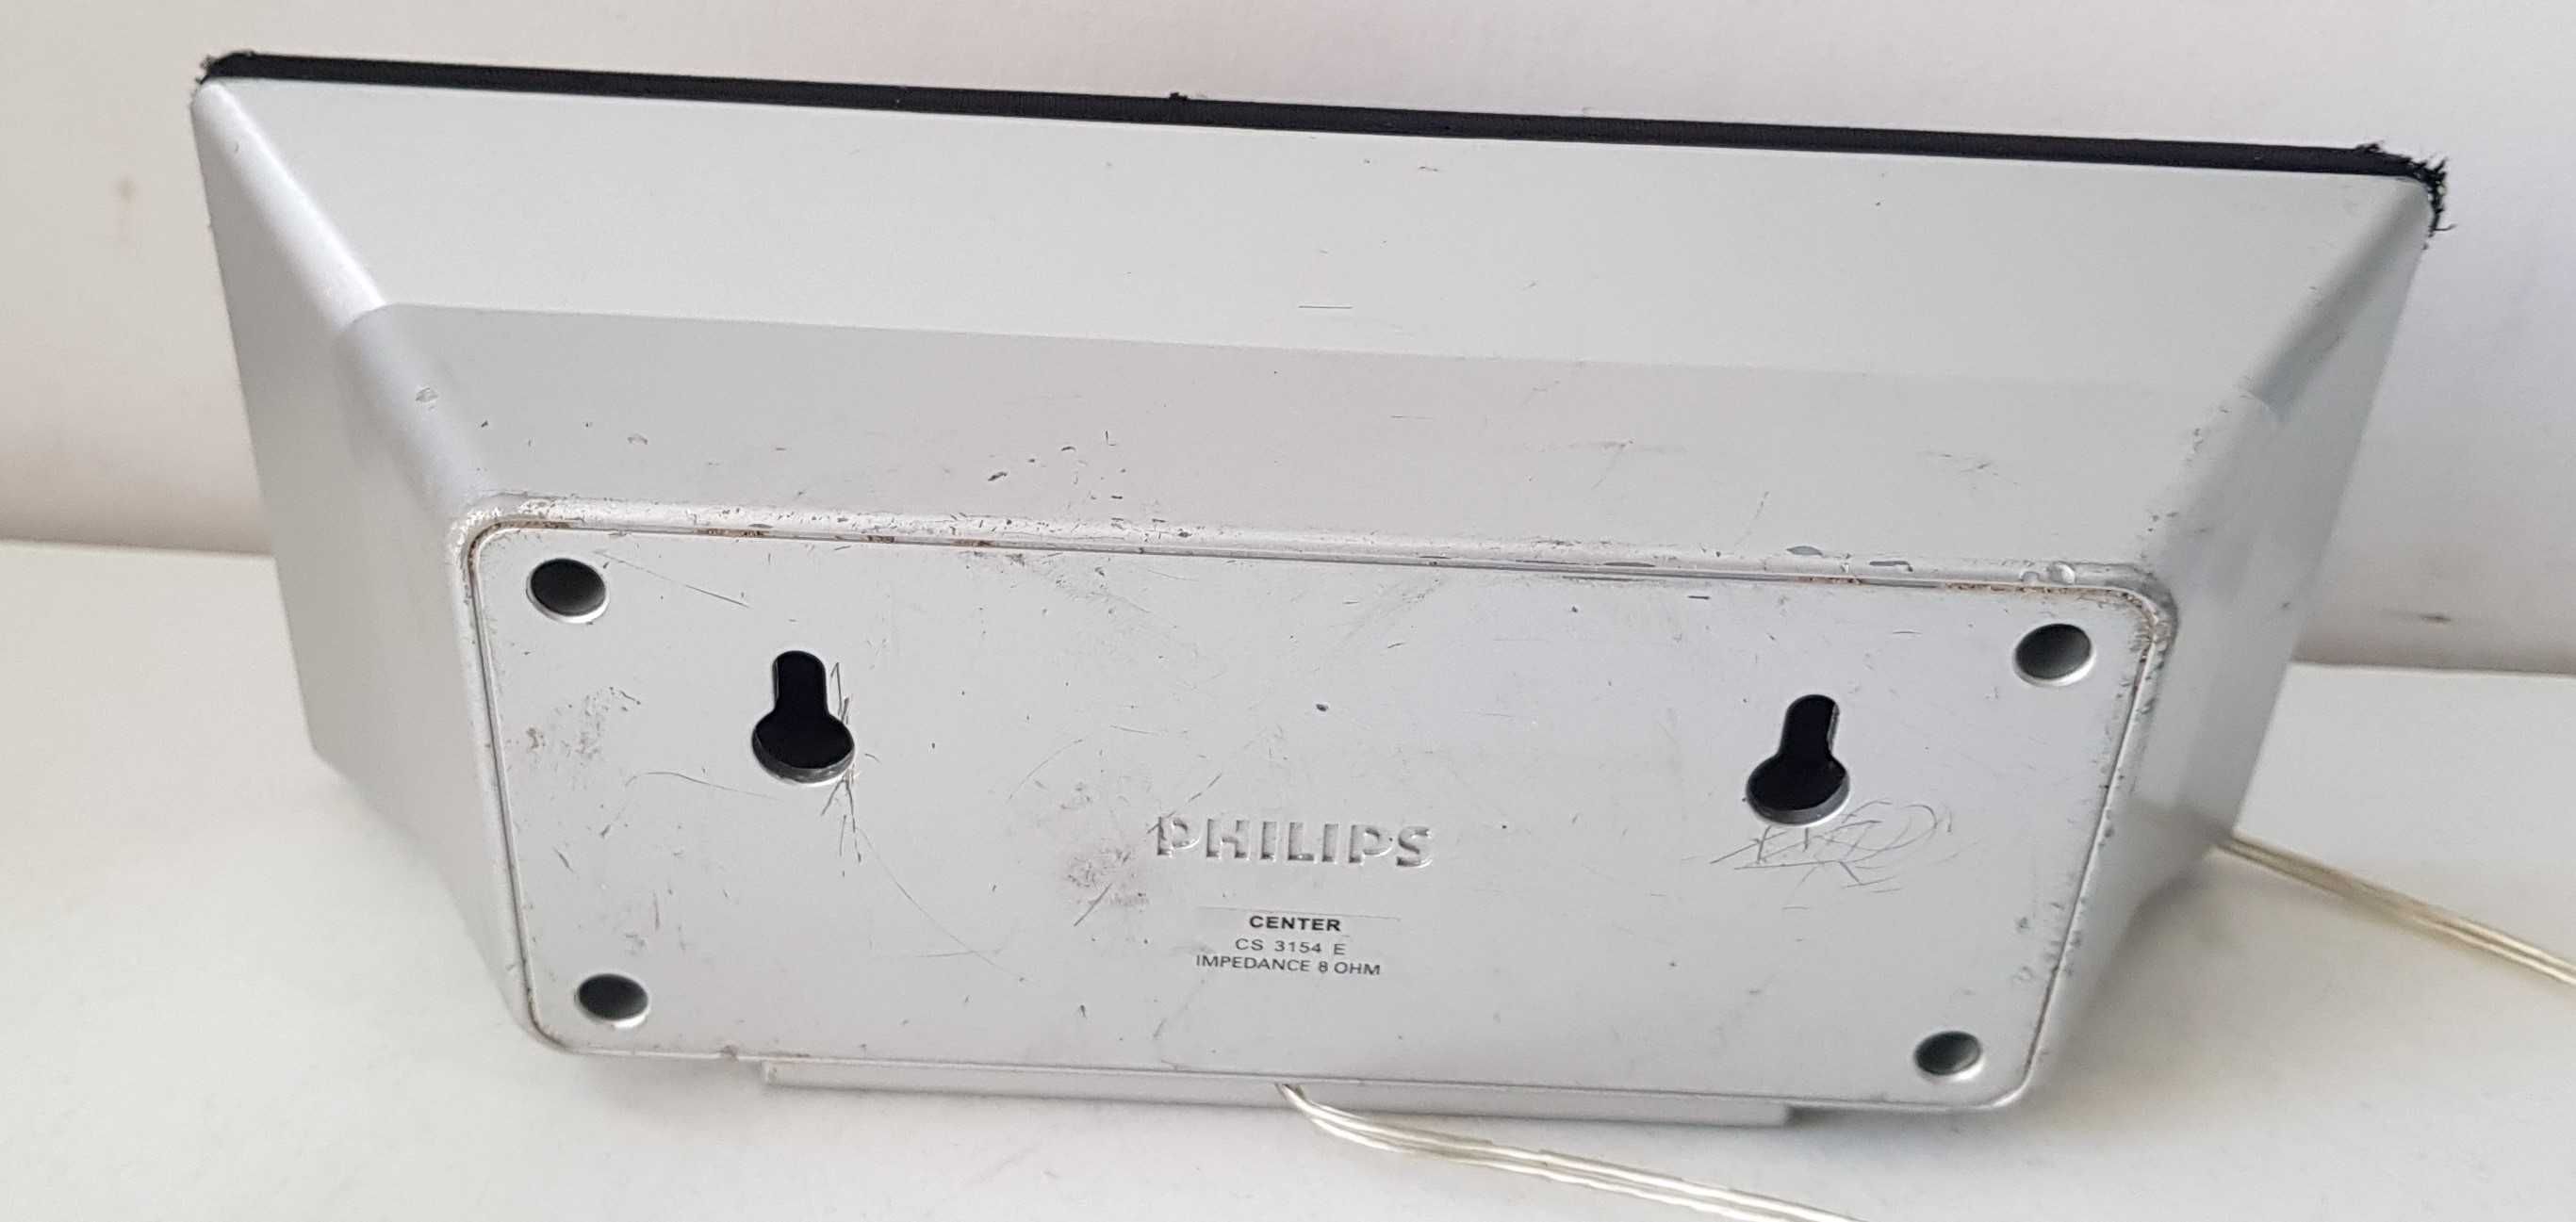 Philips CS 3154 E boxa centru din sistem 5.1 center filme muzica